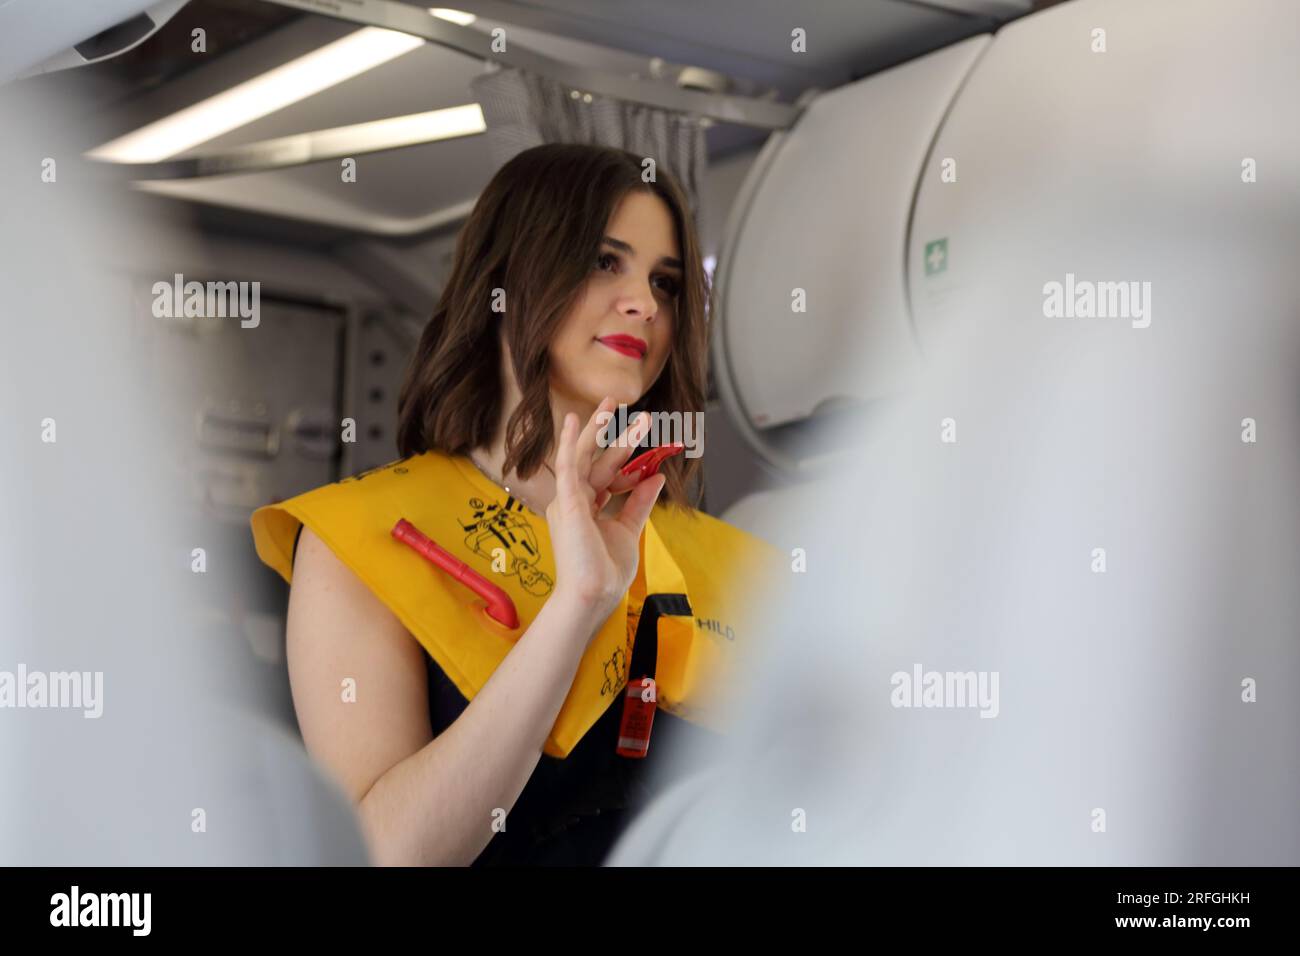 Heathrow London Airport England agent de bord démontrant les procédures de sécurité portant un gilet de sauvetage gonflable avant le vol Banque D'Images